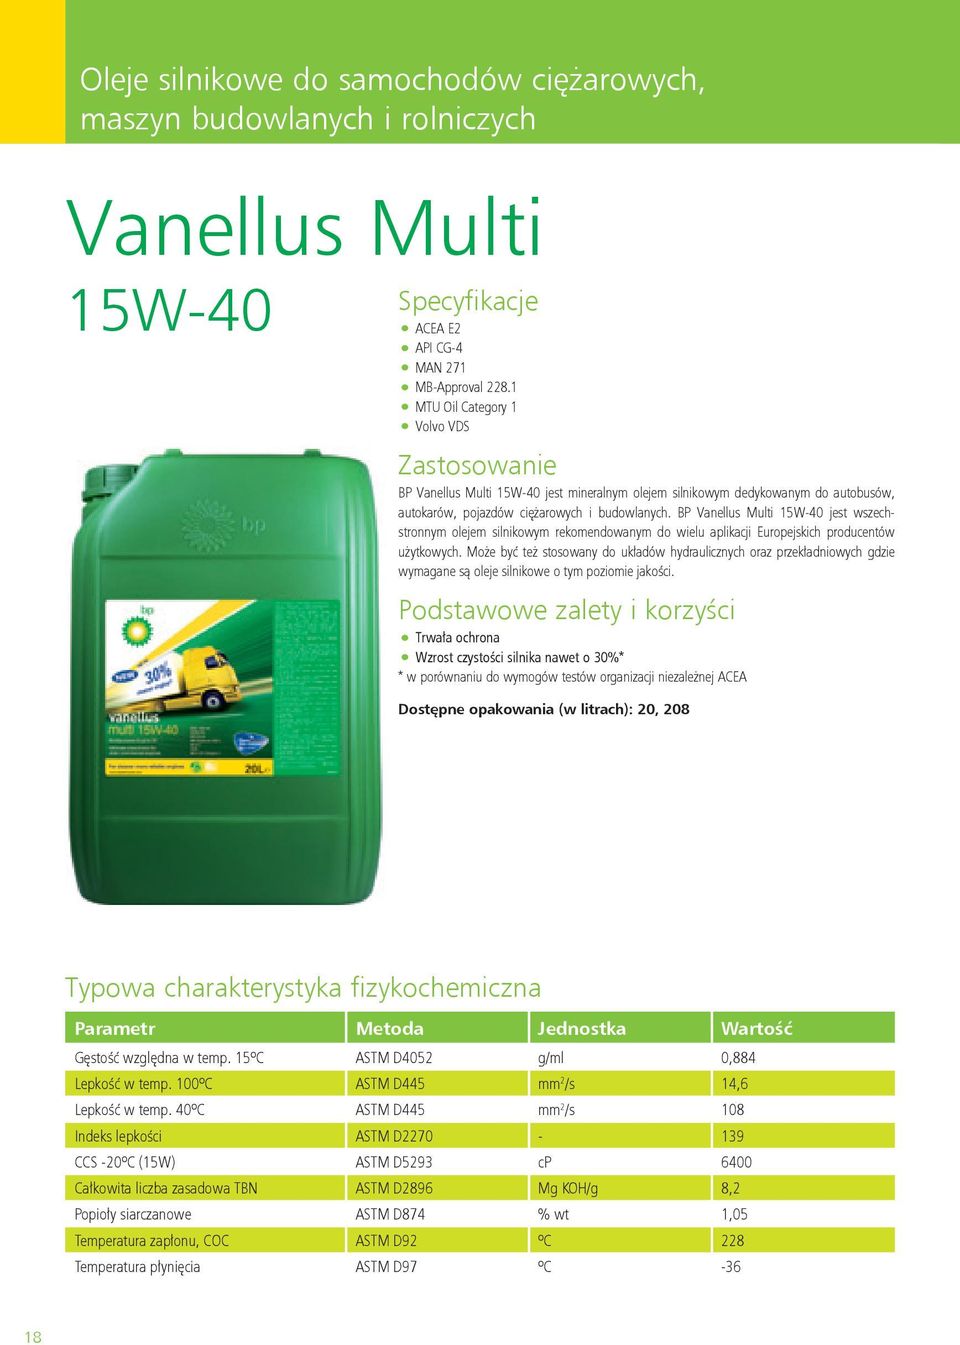 BP Vanellus Multi 15W-40 jest wszechstronnym olejem silnikowym rekomendowanym do wielu aplikacji Europejskich producentów użytkowych.